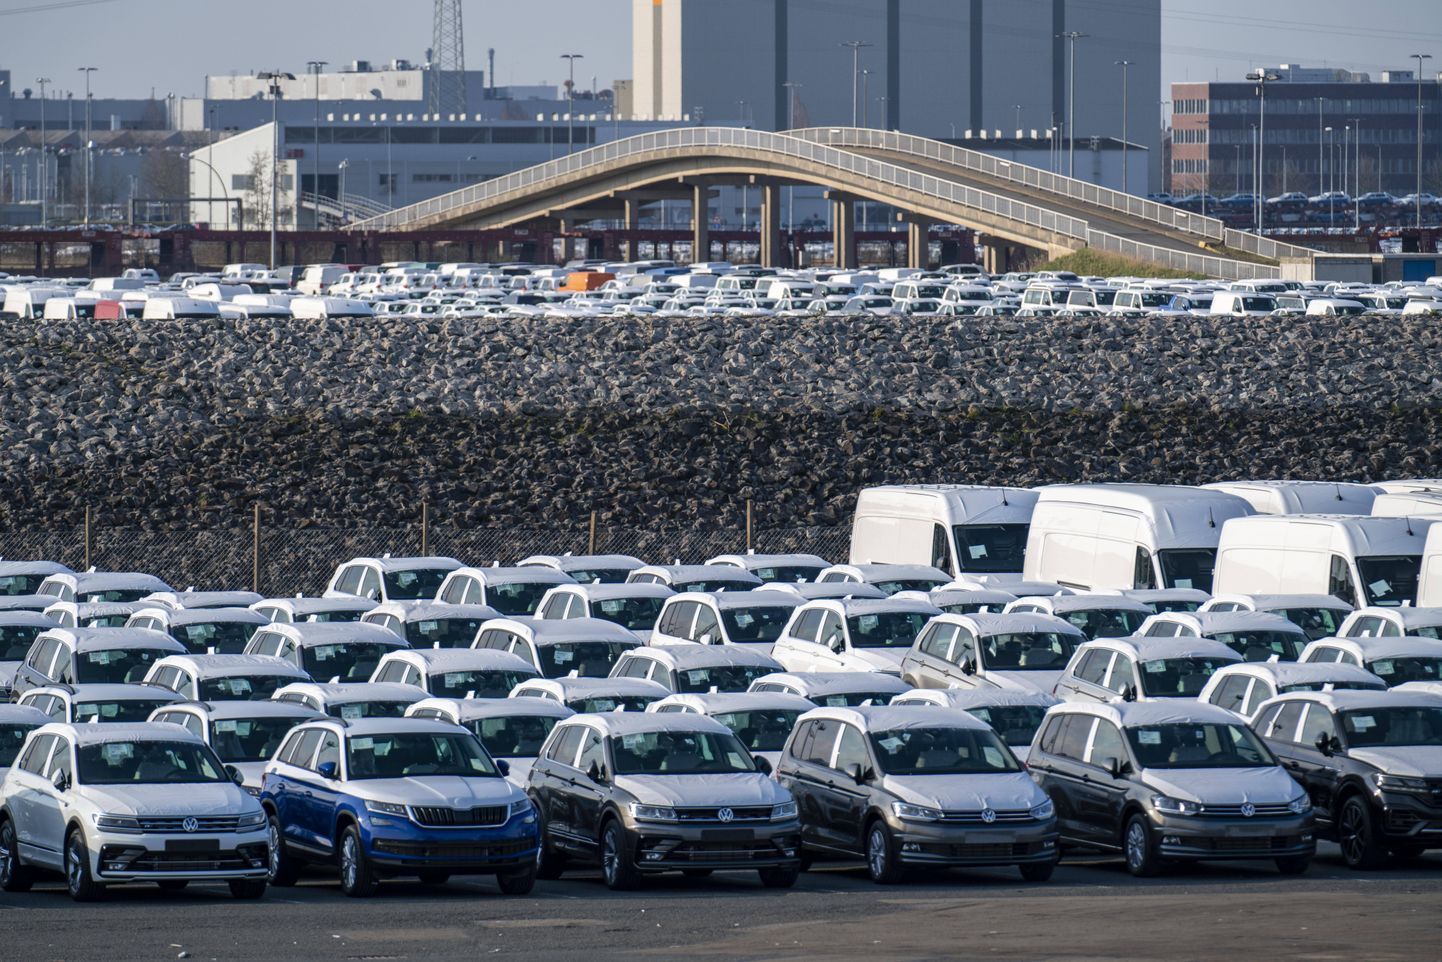 Volkswageni autod, mis ootavad meretsi transportimist.